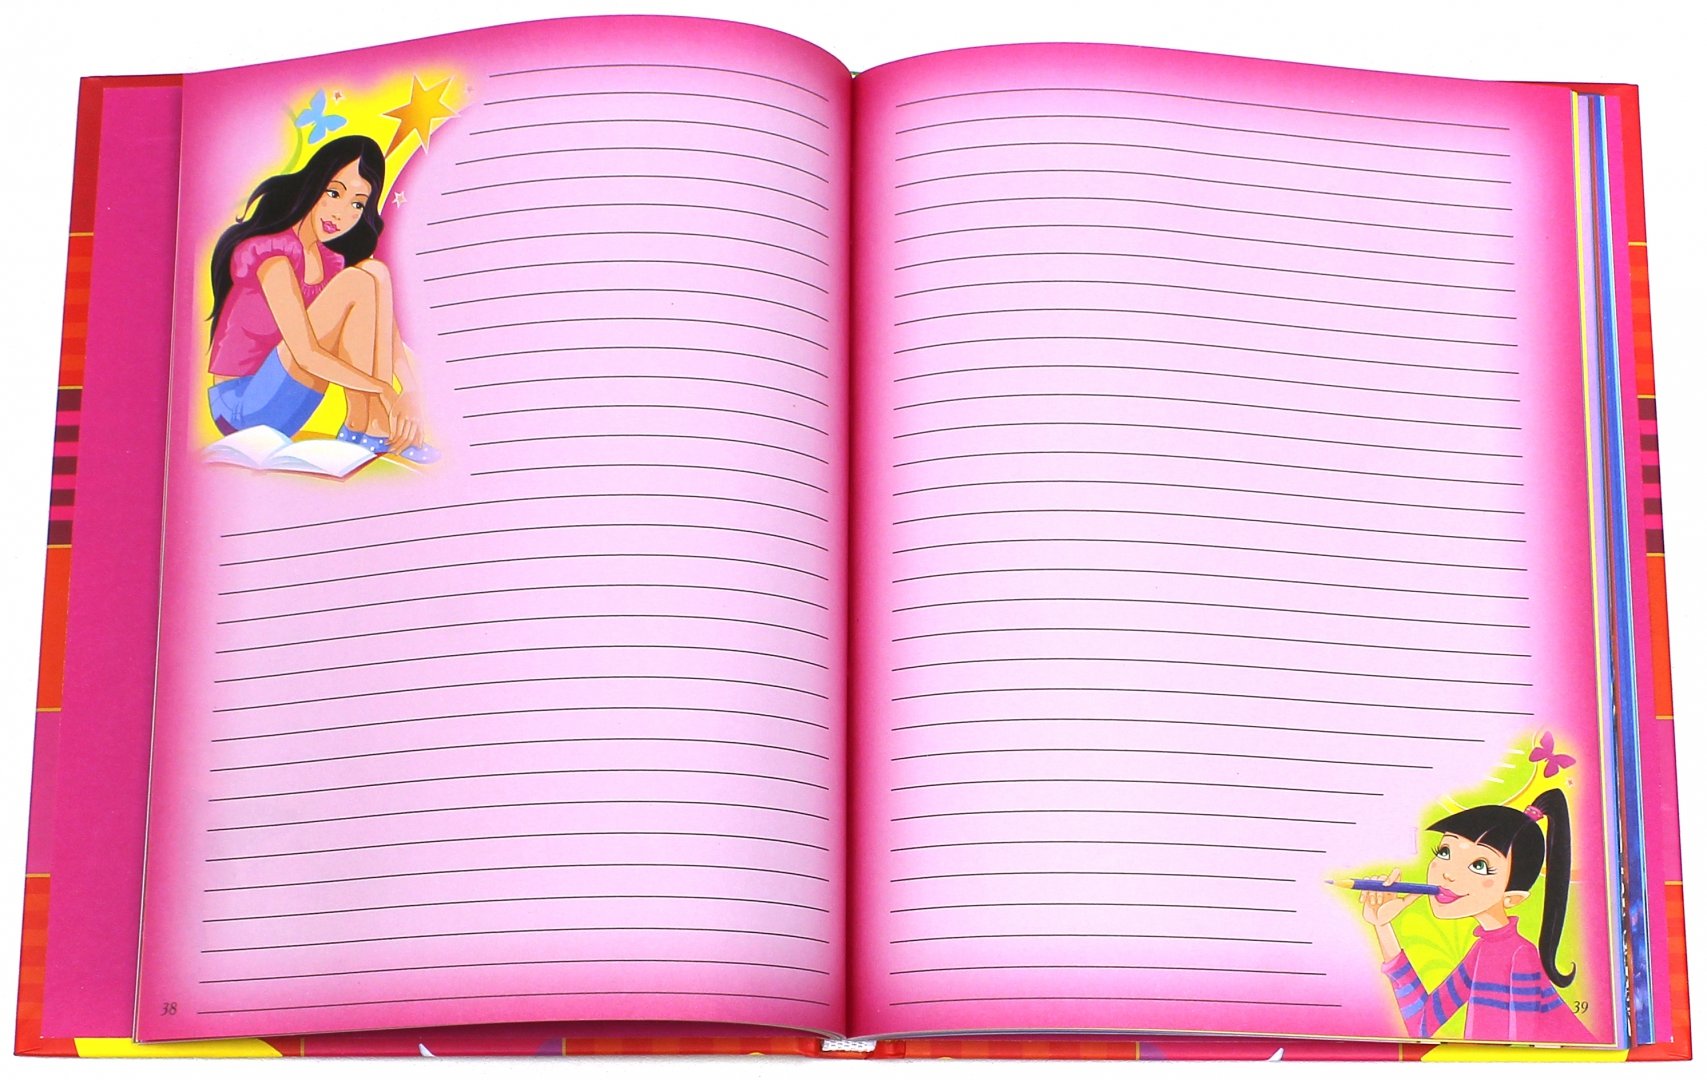 Найти дневник детям. Дневник для девочек. Дневничок для девочек. Личный дневник для девочки. Тайный дневник для девочки.